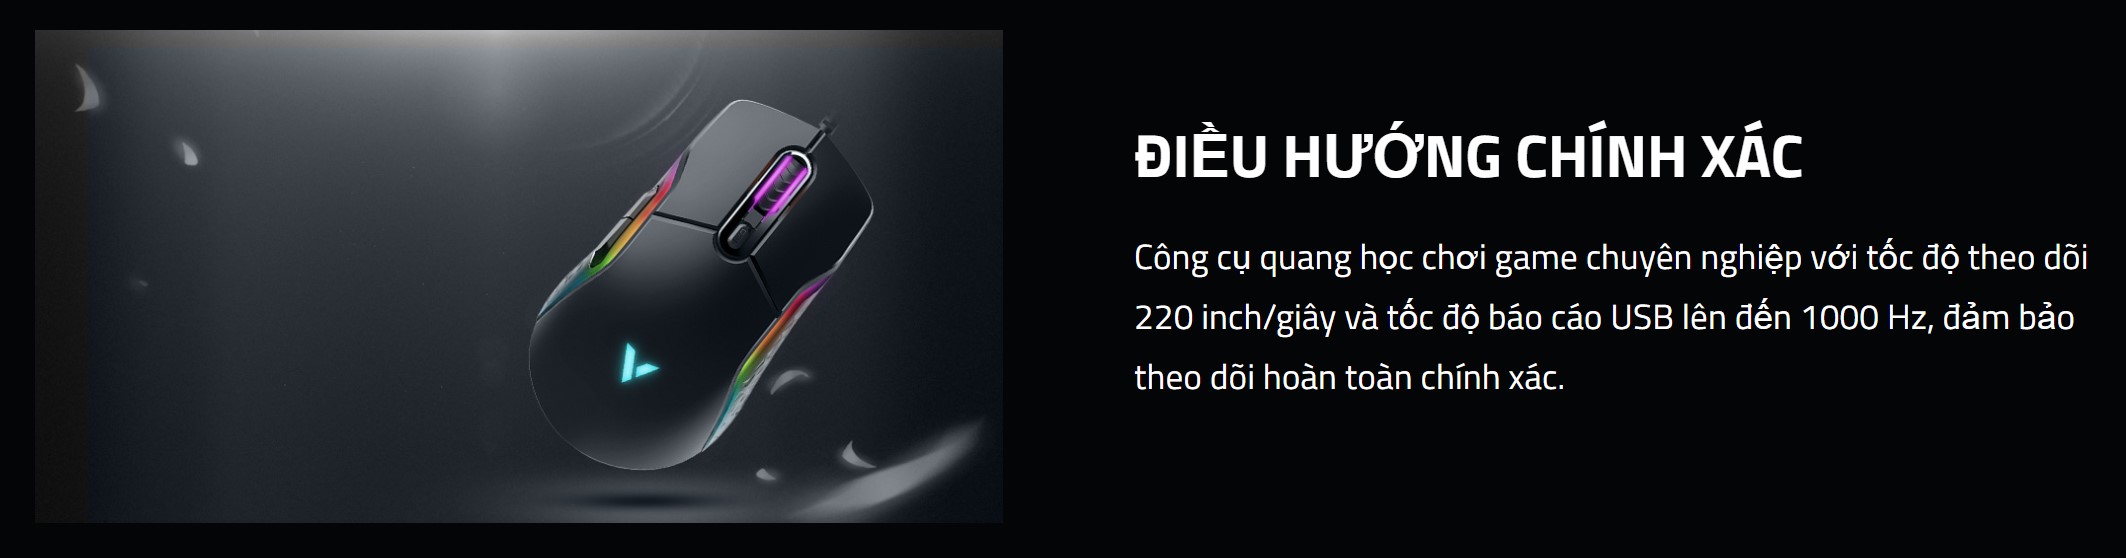 Chuột Gaming có dây Rapoo VT200 màu đen Led RGB